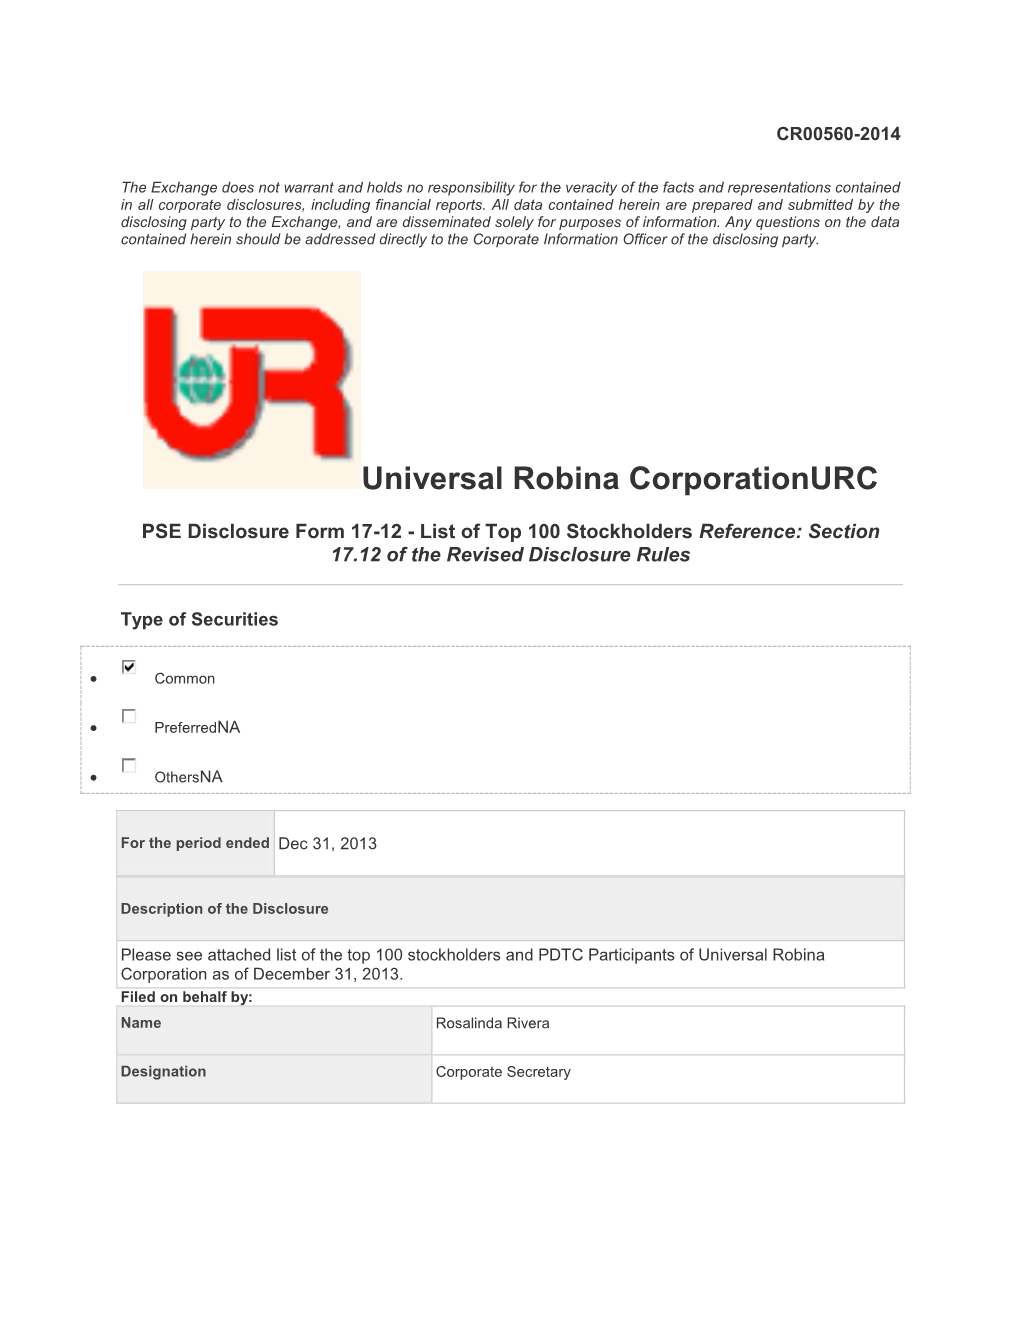 Universal Robina Corporationurc